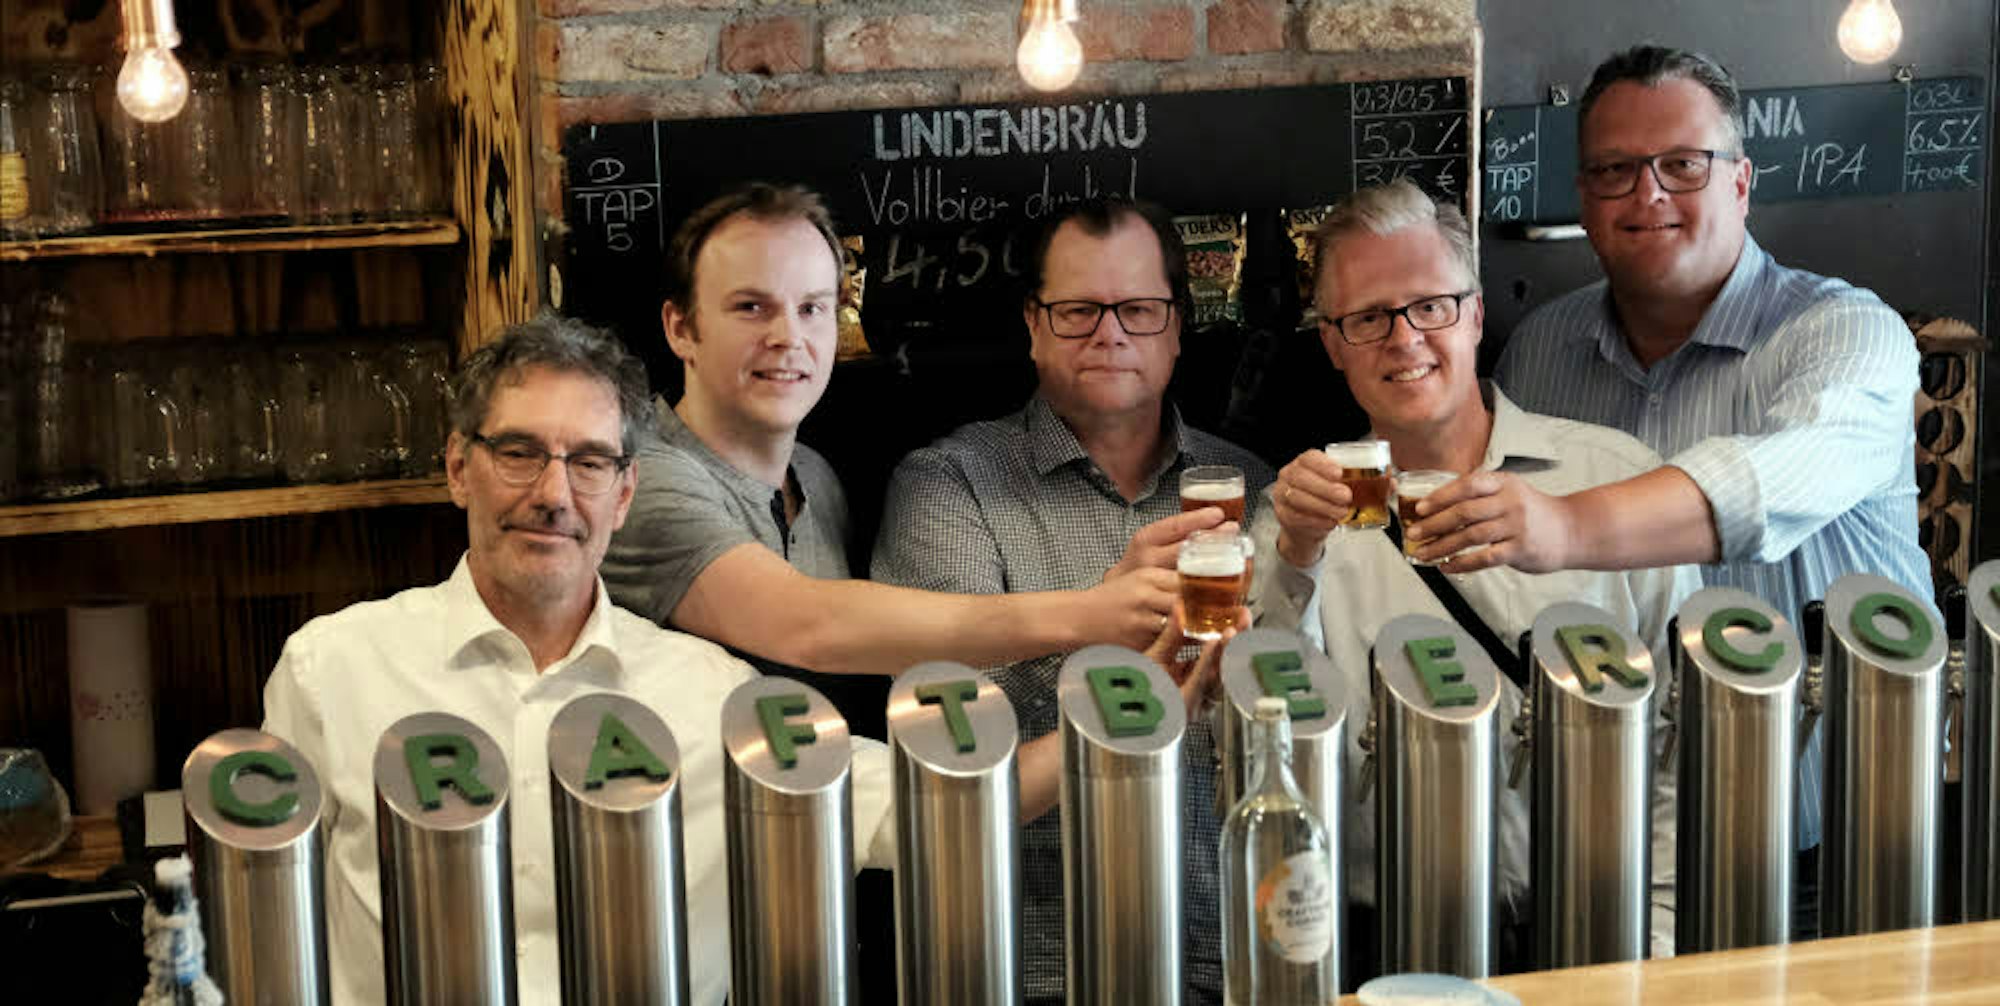 Organisator Michael Busemann (M.) mit den Craft-Beer-Brauern Michael Roeßgen (v.l), Stephan Hilbrandt, Thomas Deloy und Michael Müller